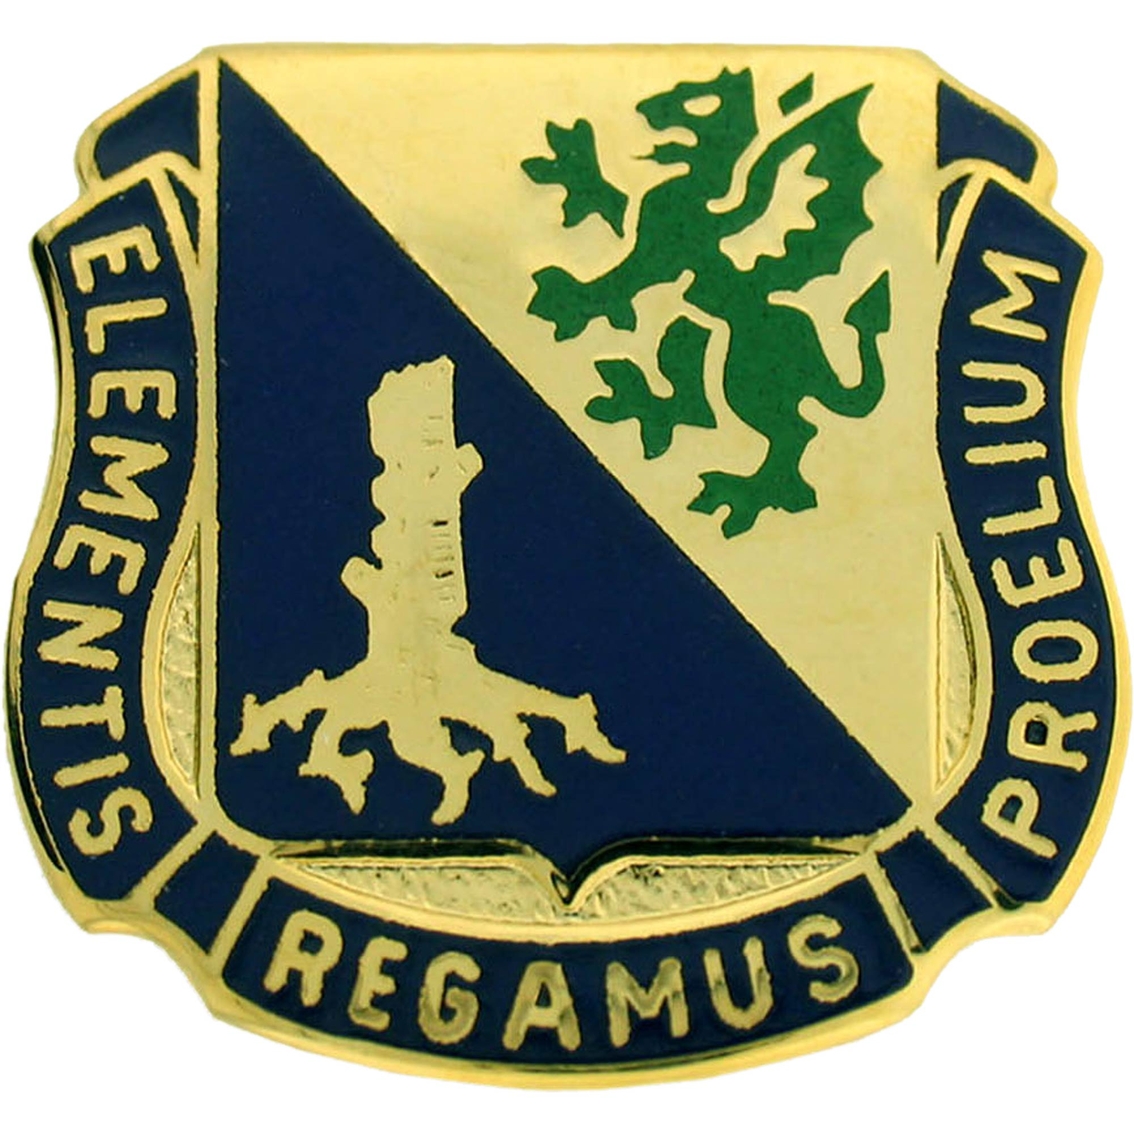 Army Regimental Crest - Army Military